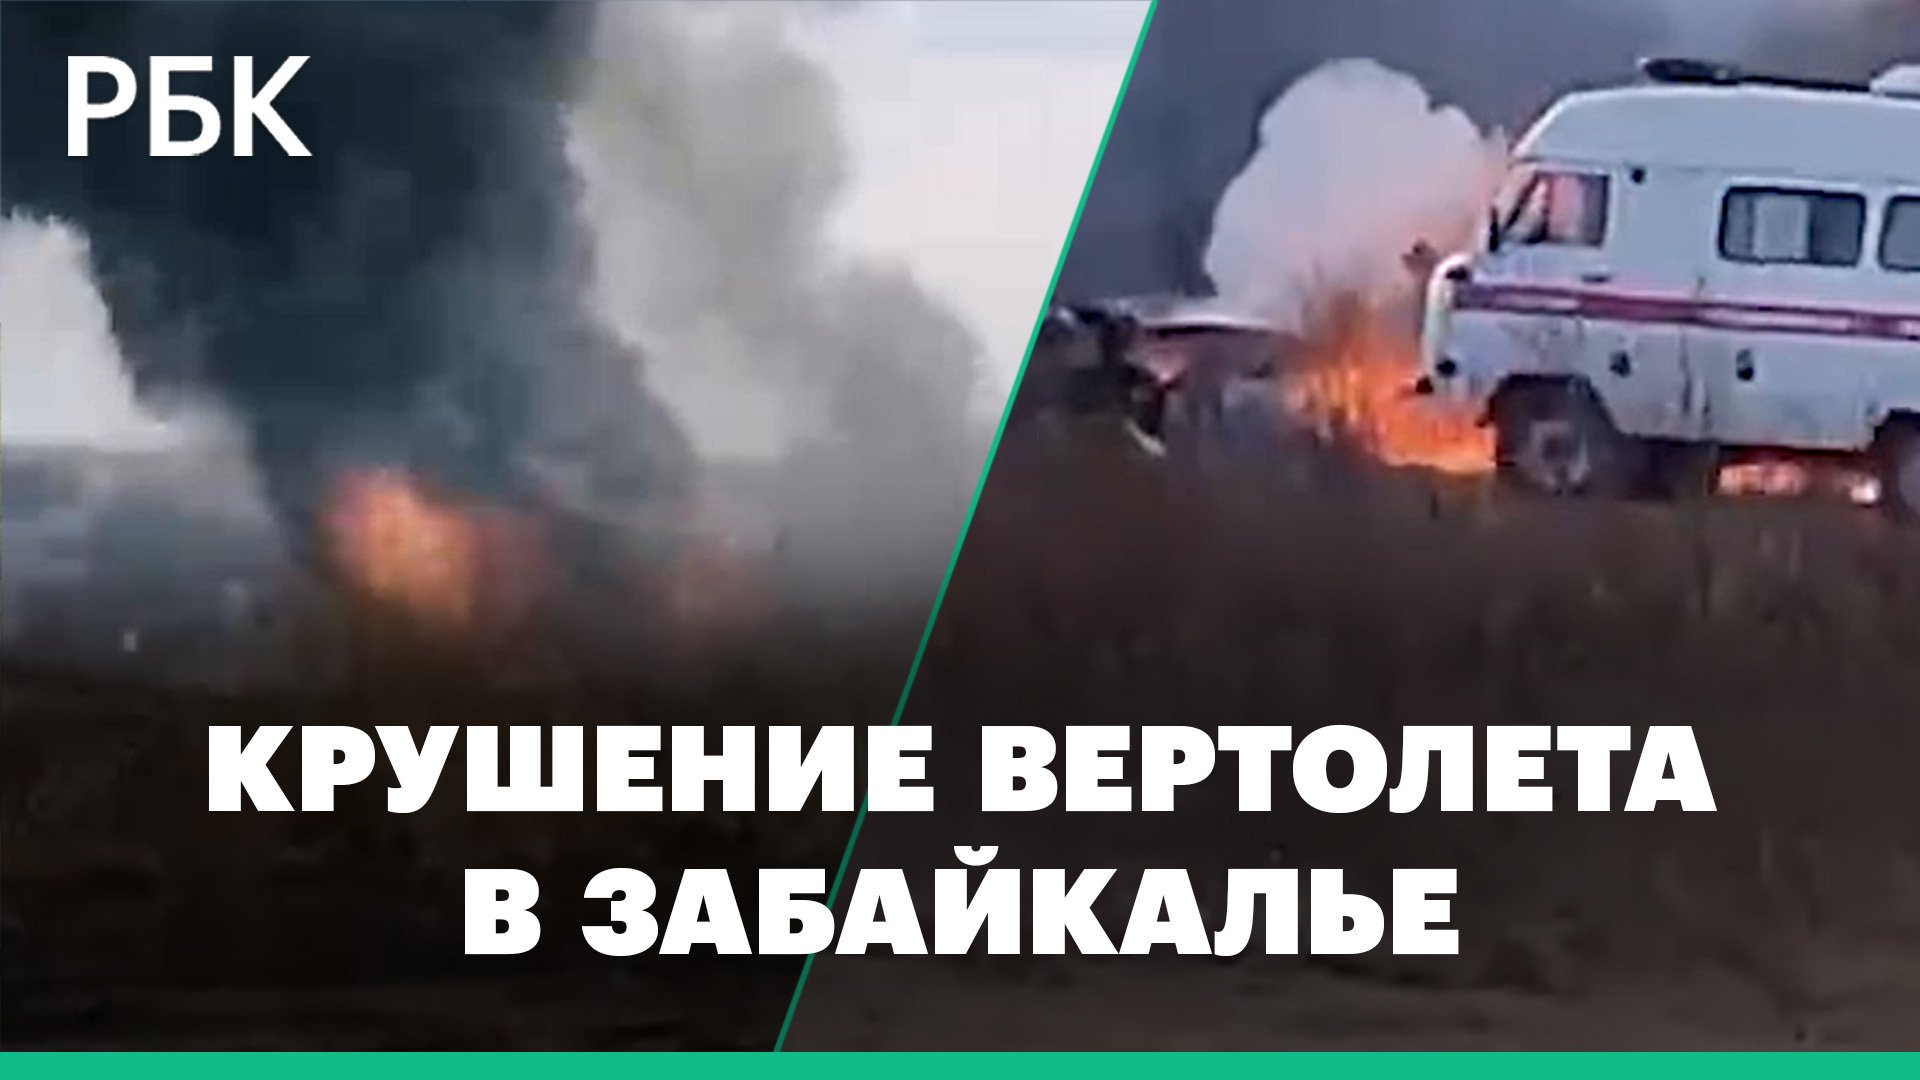 Первые кадры с места жесткой посадки вертолета Ми-8 в Забайкальском крае. Есть жертвы